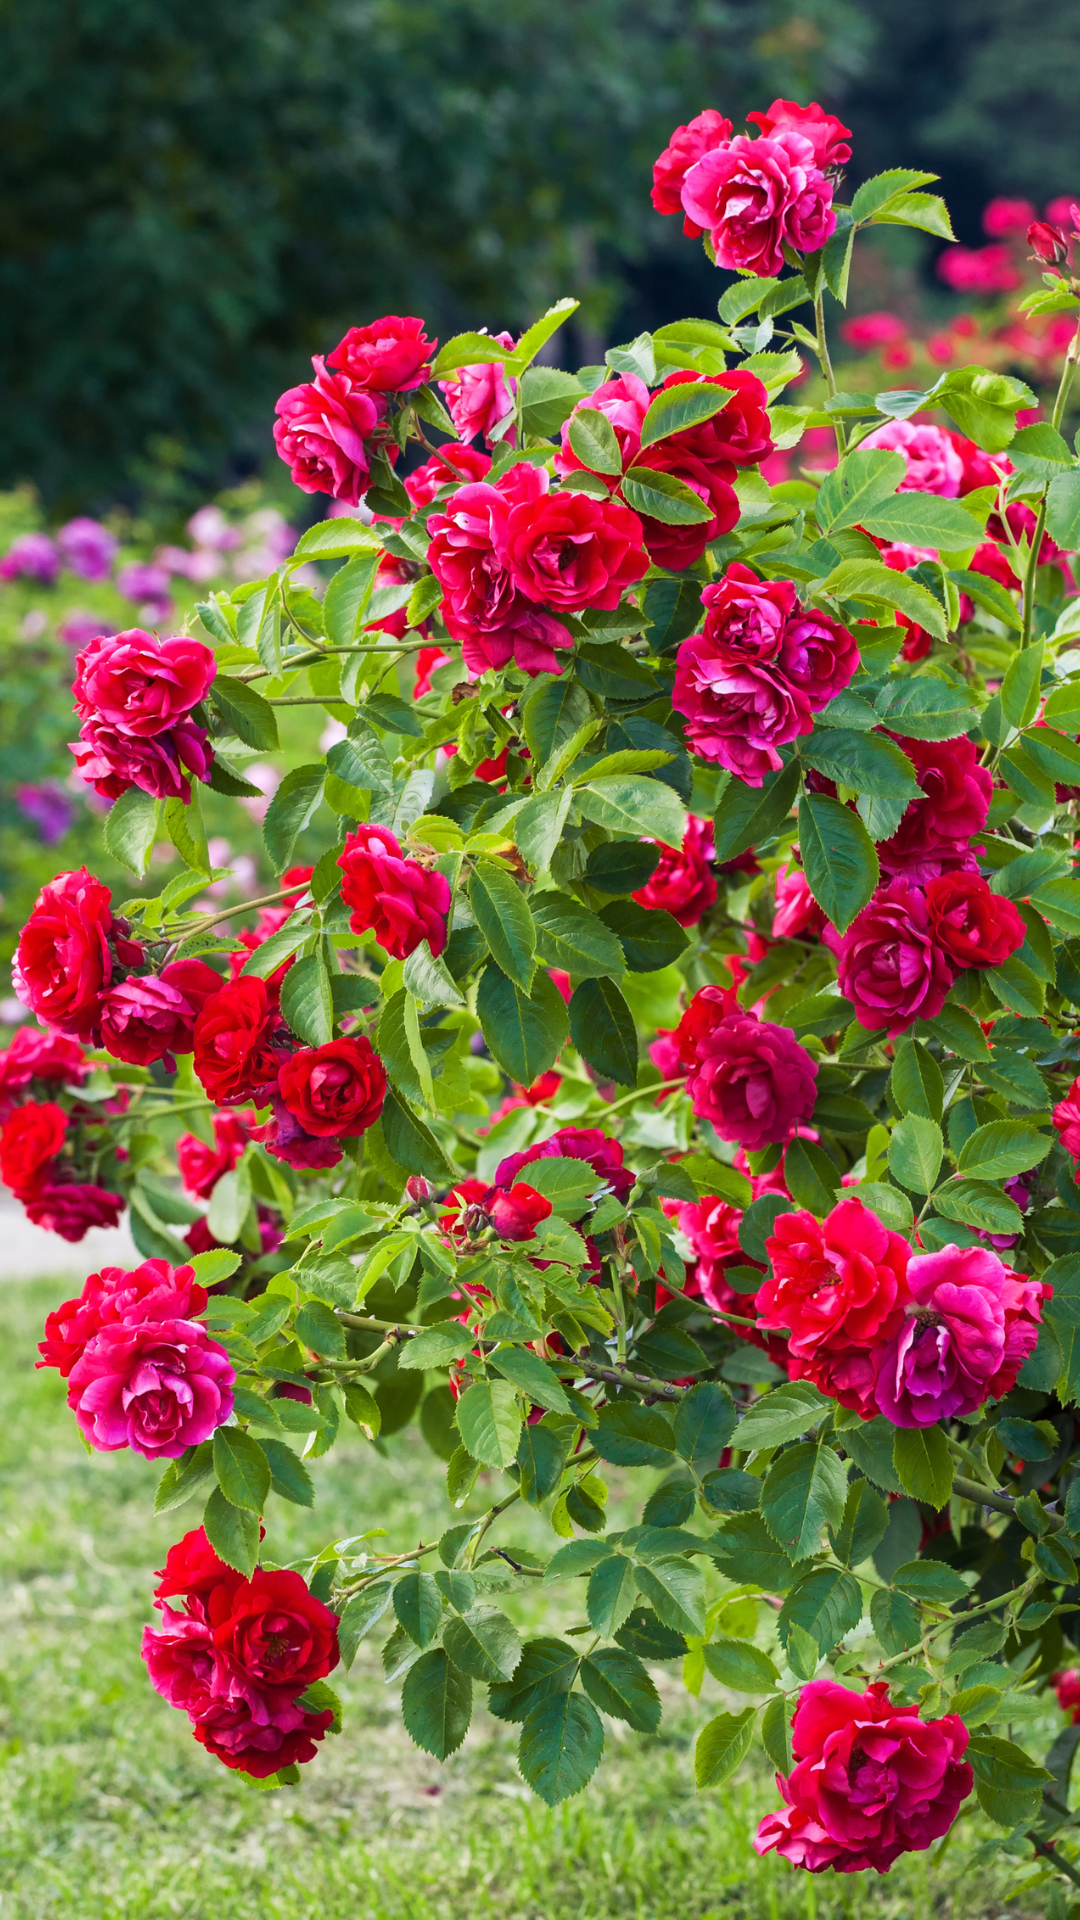 Rose gardening: 2